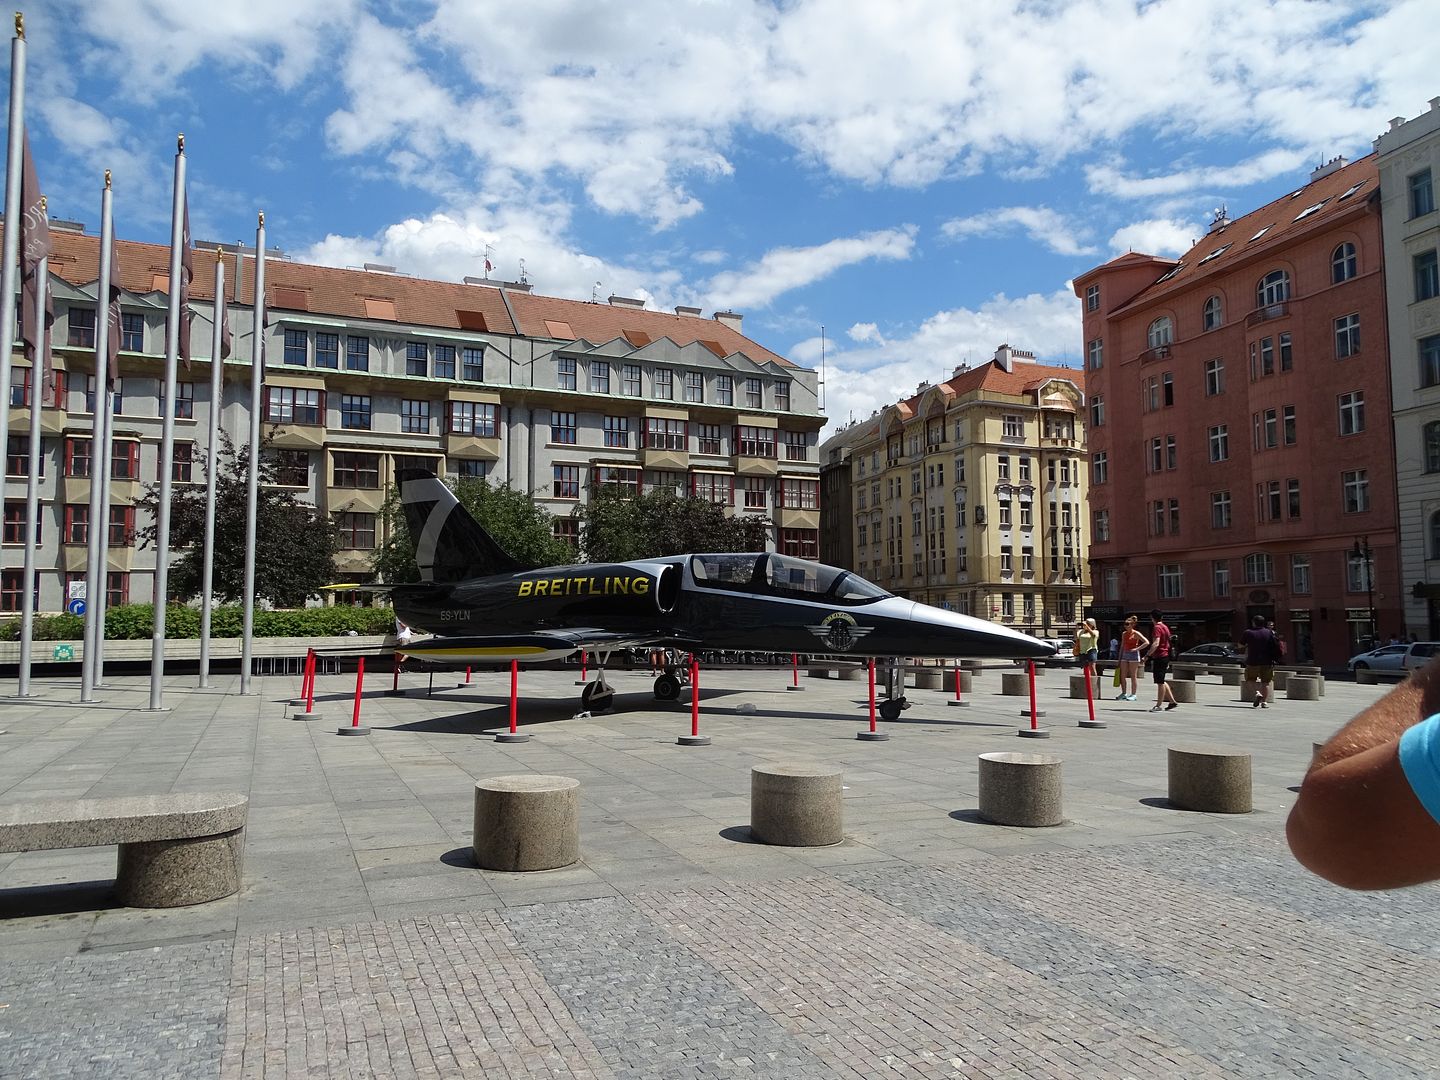 7 días en Praga con escursiones a Dresde (Alemania),Karlovy Vary y Terezin (E.C) - Blogs of Czech Republic - Día 3: Viernes 1 de Julio de 2016 (20)